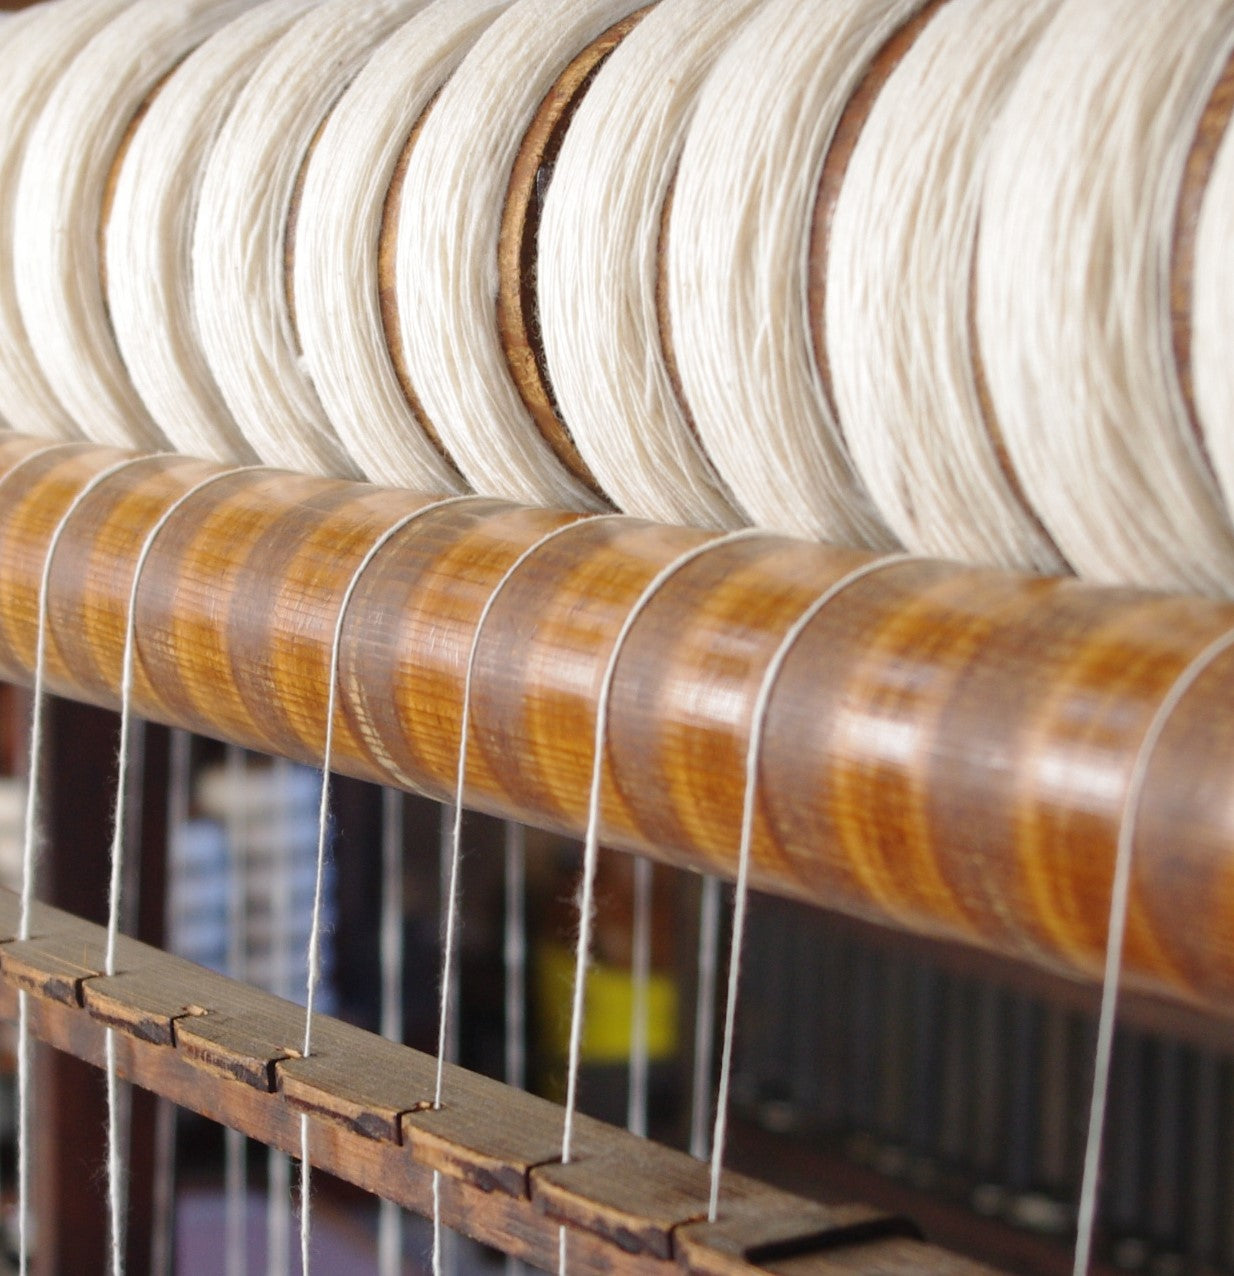 ガラ紡は、独自の風合いや品質をもった糸を作り出すことができるため、手紡ぎのような温かみや繊細さも魅力的です。ガラ紡によって作られた糸は、織物にしたときには、しなやかで風合いのある仕上がりとなり、通気性や吸湿性、耐久性を向上させることができます。わたから わたからつむぐ マインド松井 日本の綿 わた 和綿 綿 和綿とは コットン コットンとは コットン１００％ オーガニックコットン 日用品 商品 無農薬 わめん 育て方 種類 糸紡ぎ 特徴  販売 豊か 暮らし 豊かな暮らし 生活 ガラ紡 コットン 生地 おすすめ 国産和綿 国産の綿 国産 生産地 自社畑 地場産業 岐阜 熊本 繊維 テキスタイル 織物 織り方 生地 布 ﾒｲﾄﾞｲﾝｼﾞｬﾊﾟﾝ 古い機械 国内製造 製造 JAPAN がら紡の仕組み 仕組み 撚り 撚りのかけ方 撚りの仕方 ションヘル織機 布帛 平織り 綾織り しゅす織り ワッフル ワッフル織り ワッフル生地 通気性 吸湿性 保温性 綿 わた コットン オーガニックコットン 綿１００％　コットン１００％　オーガニックコットン１００％